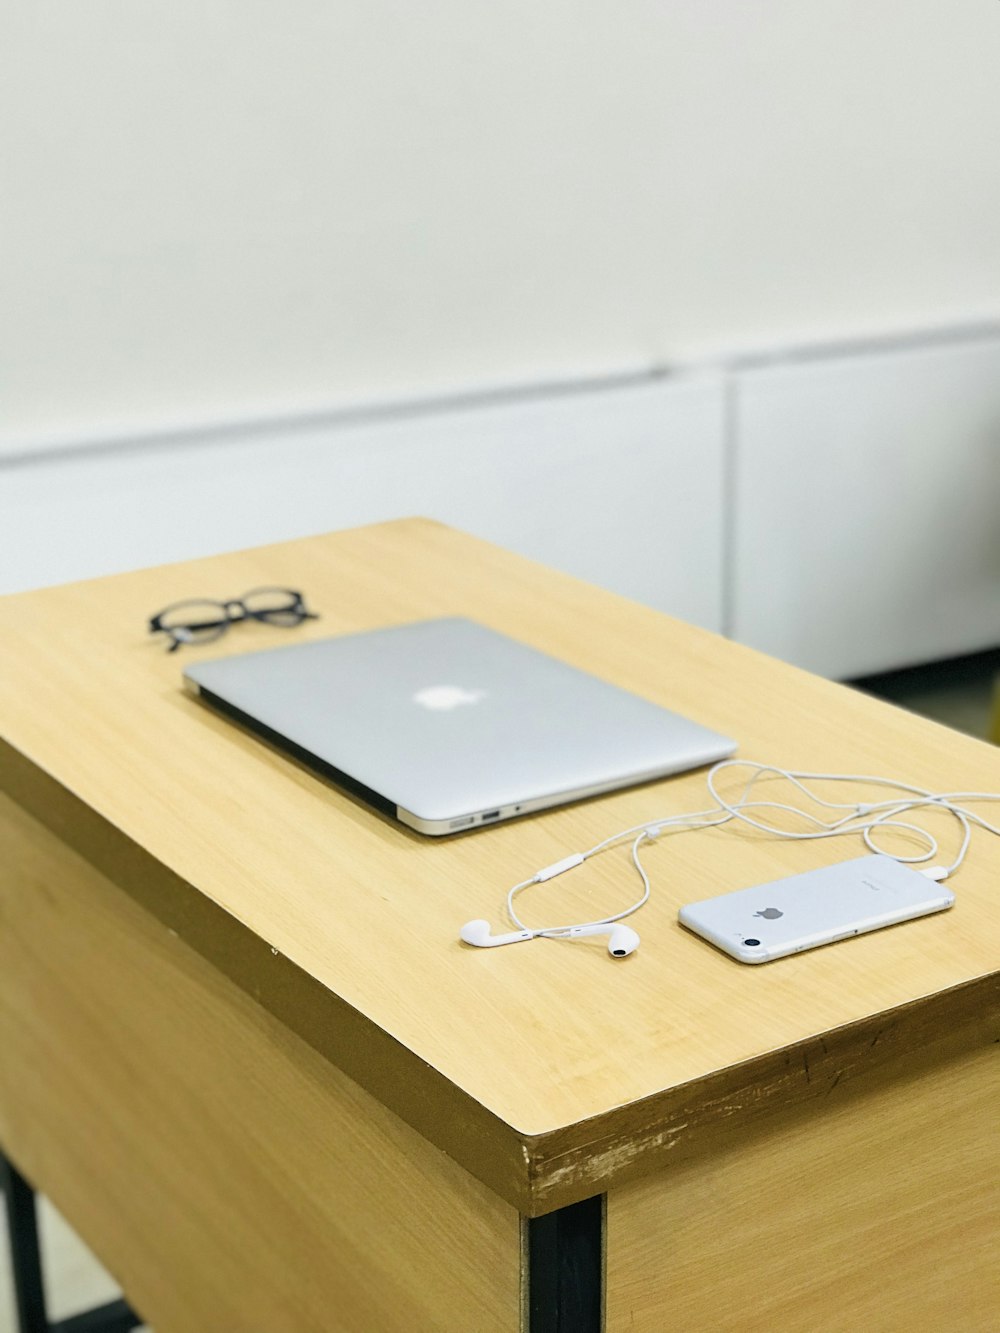 silver MacBook beside eyeglasses and iPhone